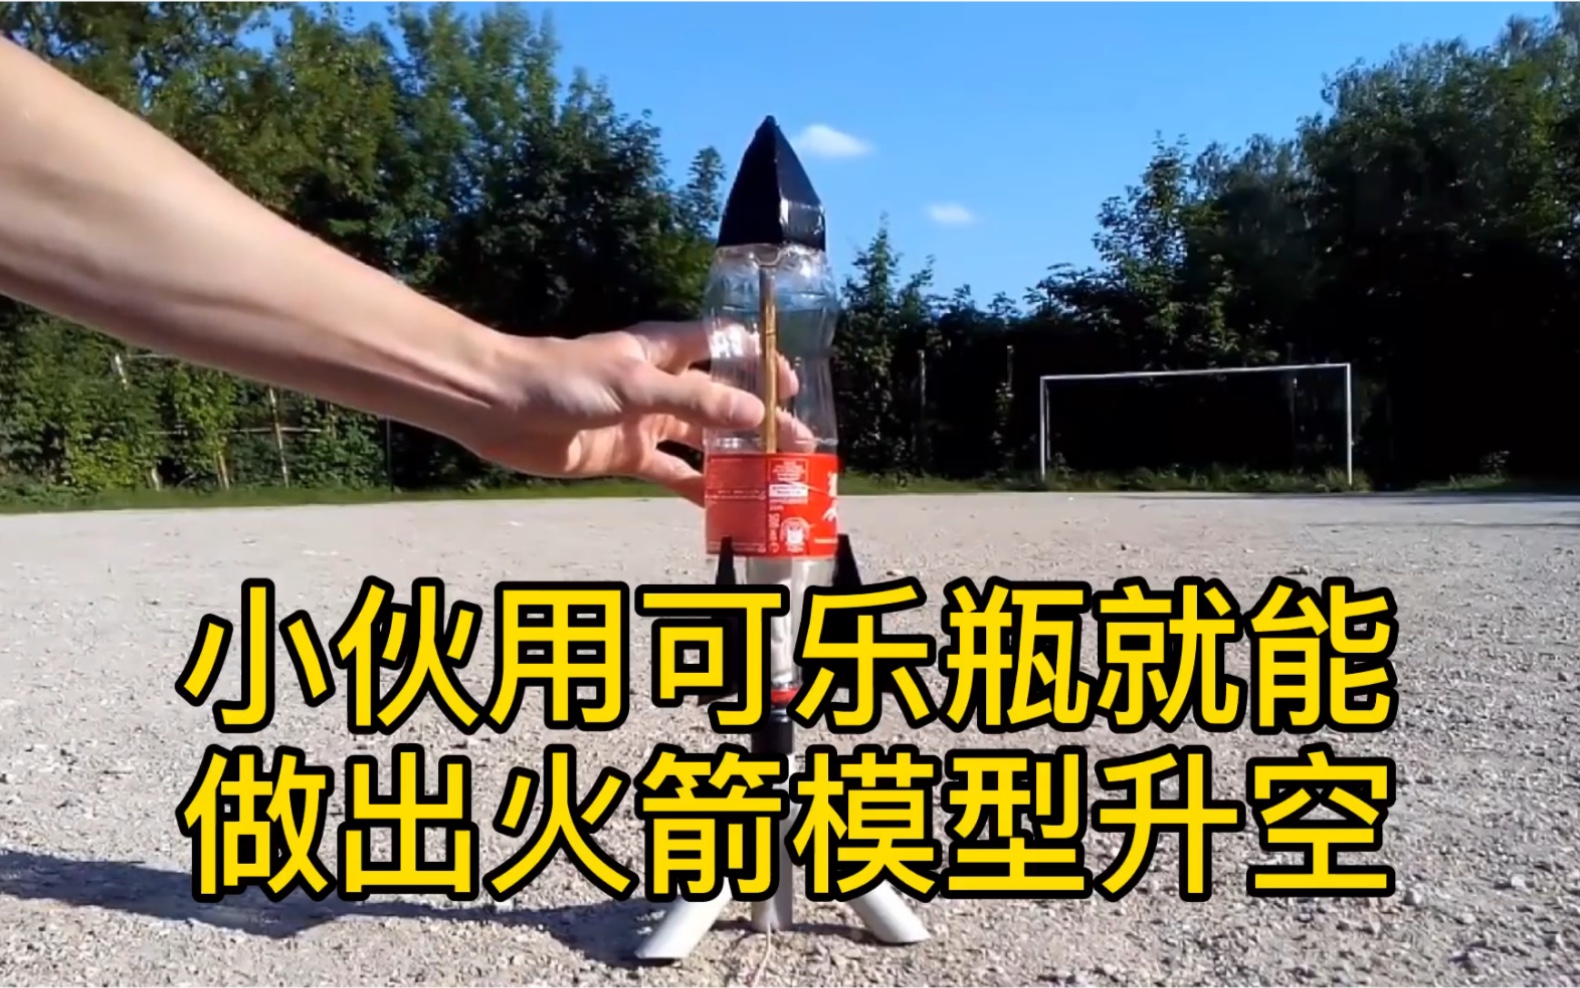 用可乐瓶制作火箭模型,前一秒无聊,后一秒直接傻眼